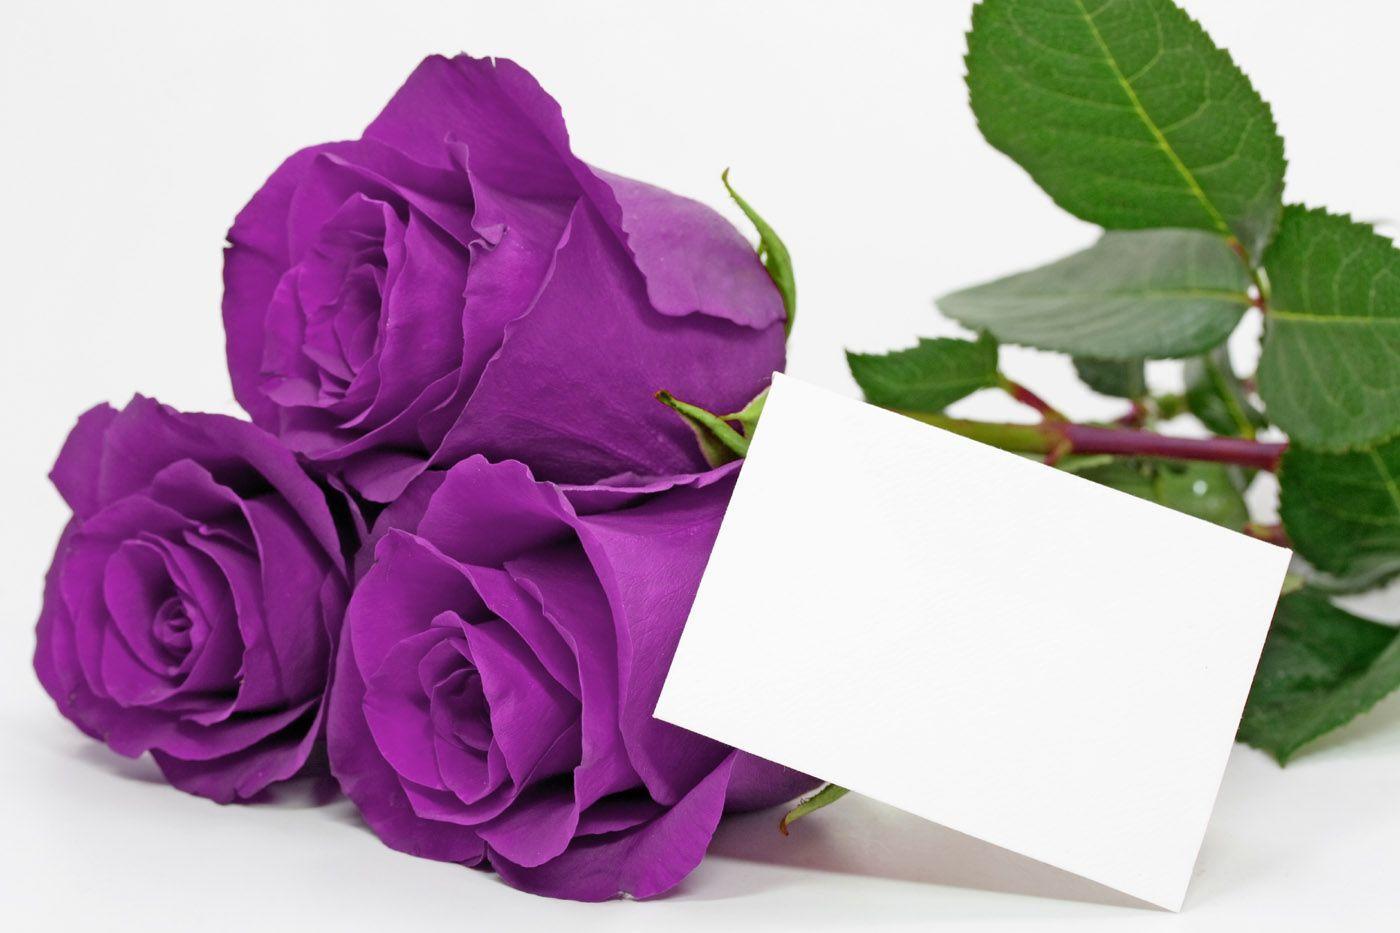 Tổng hợp hình ảnh hoa hồng tím đẹp nhất - [Kích thước hình ảnh: 1400x933 px]